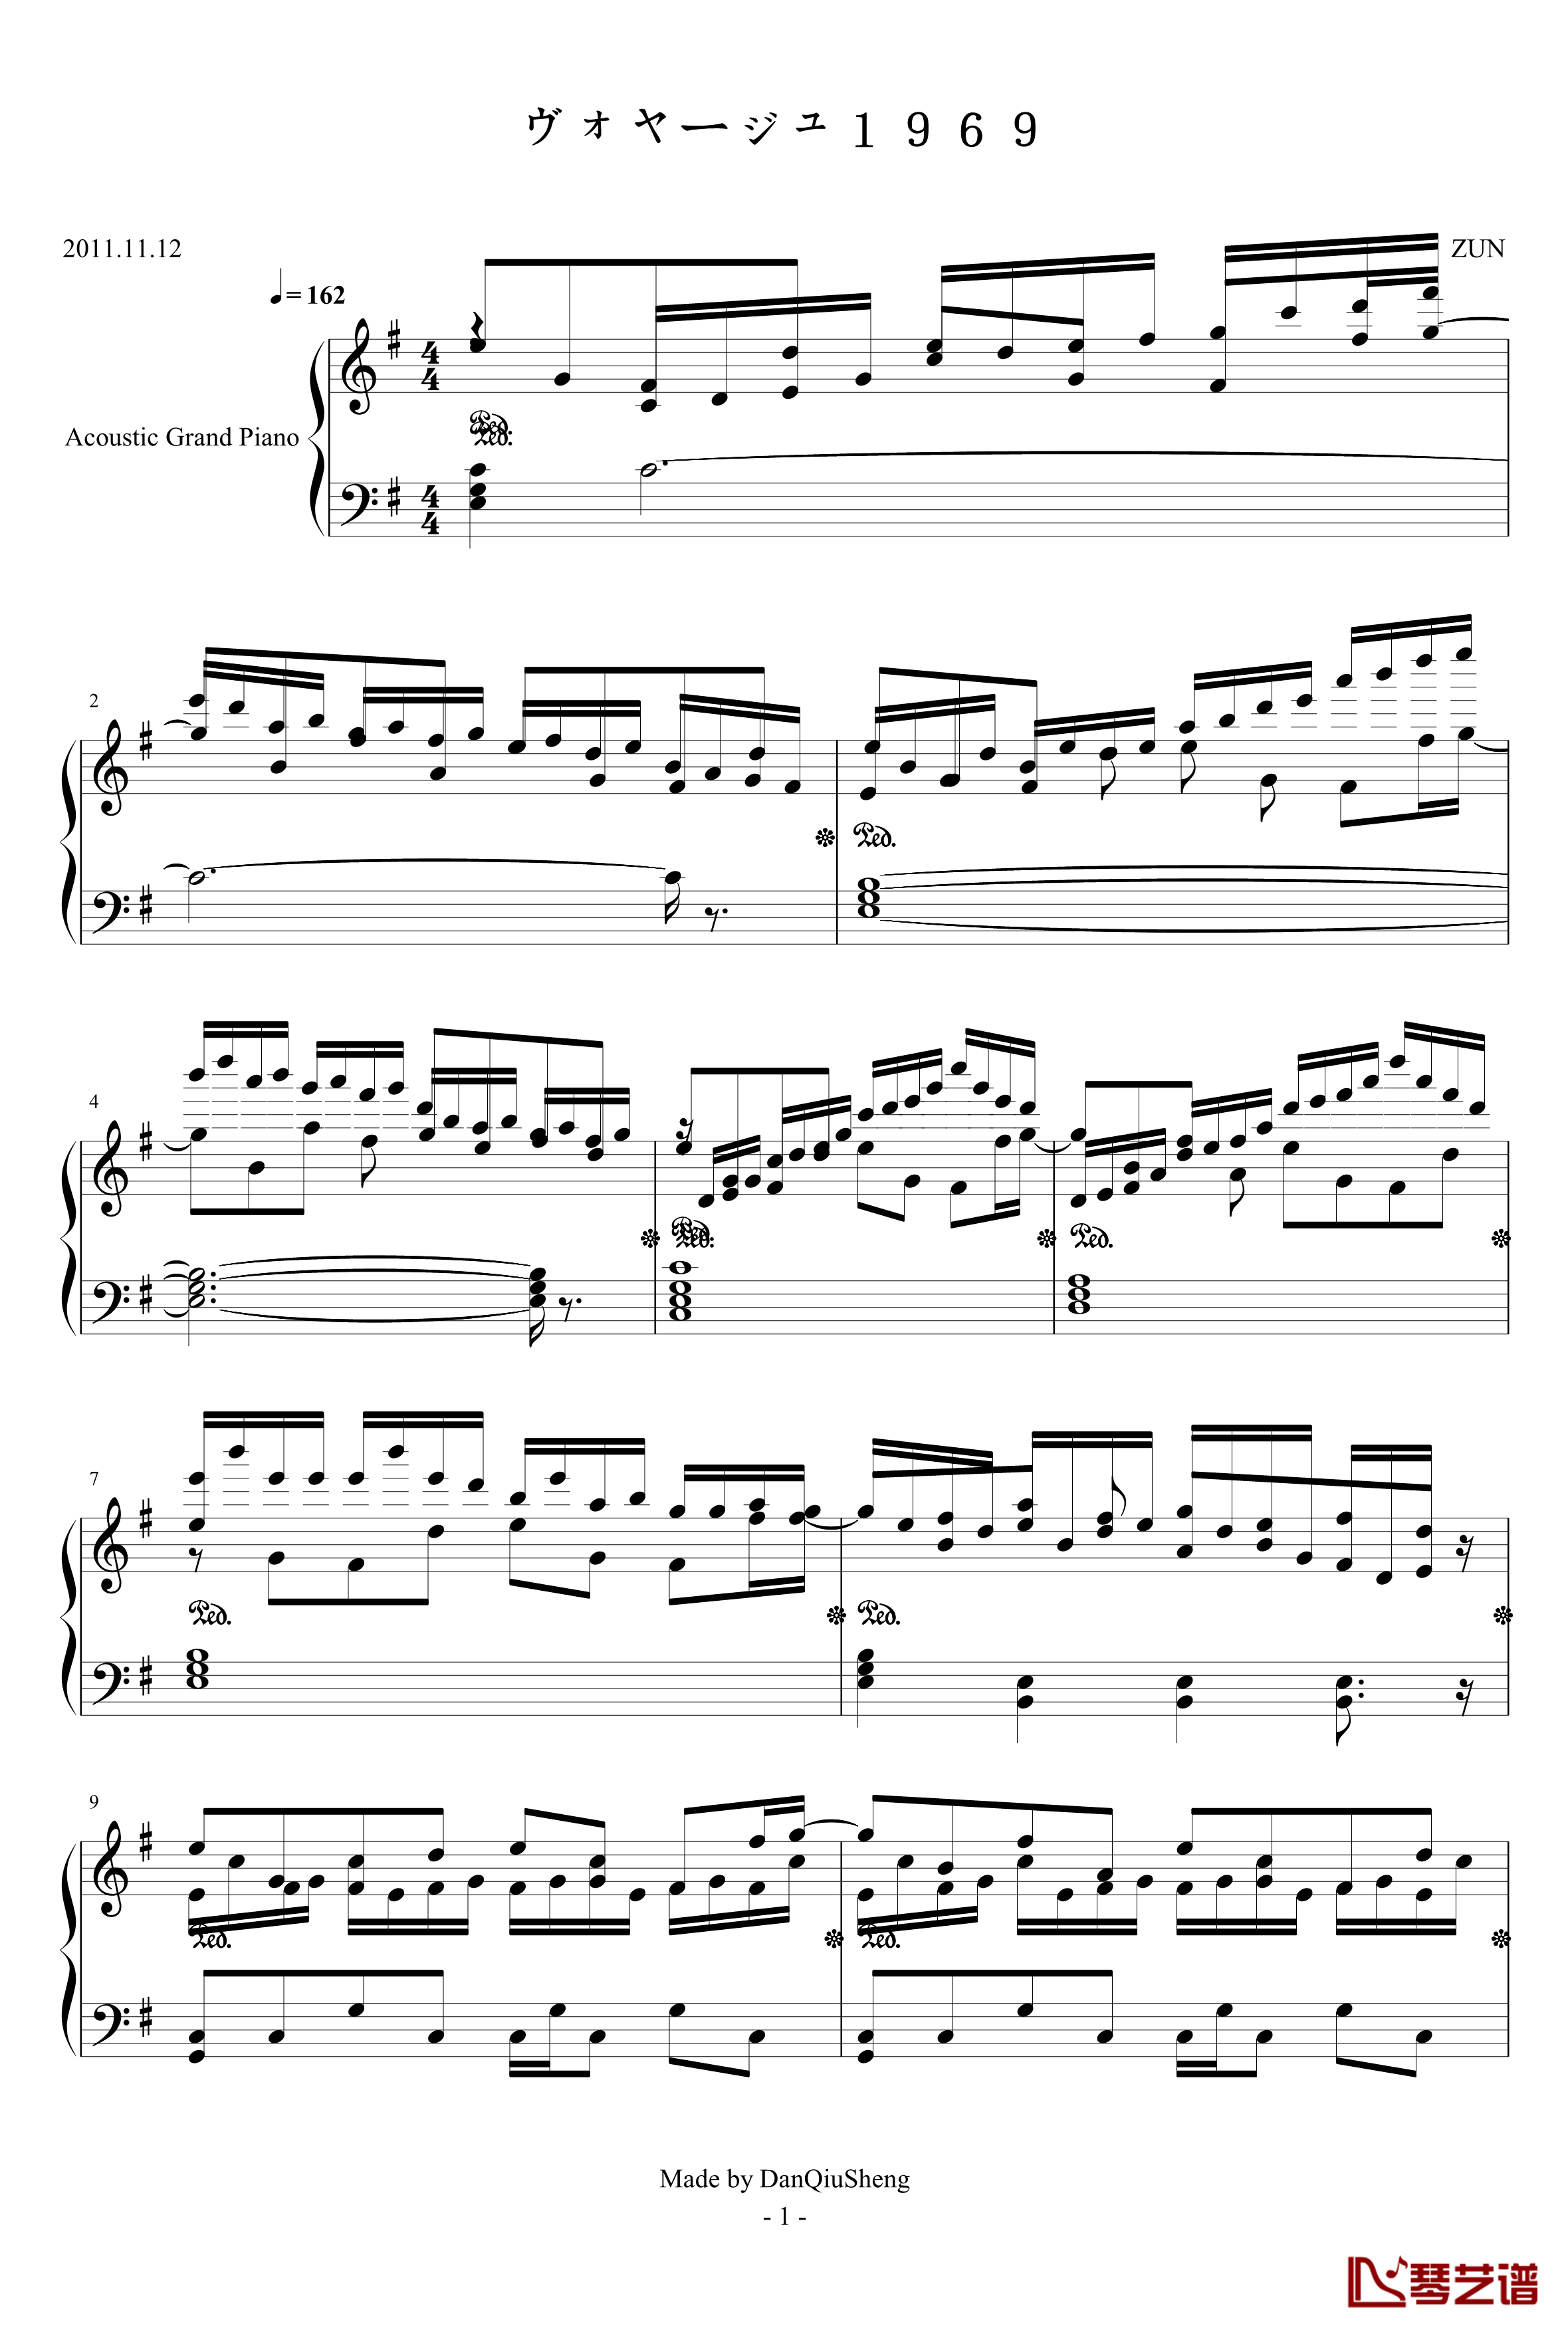 ヴォヤージュ1969钢琴谱-HARD-东方永夜抄第6面-东方project1